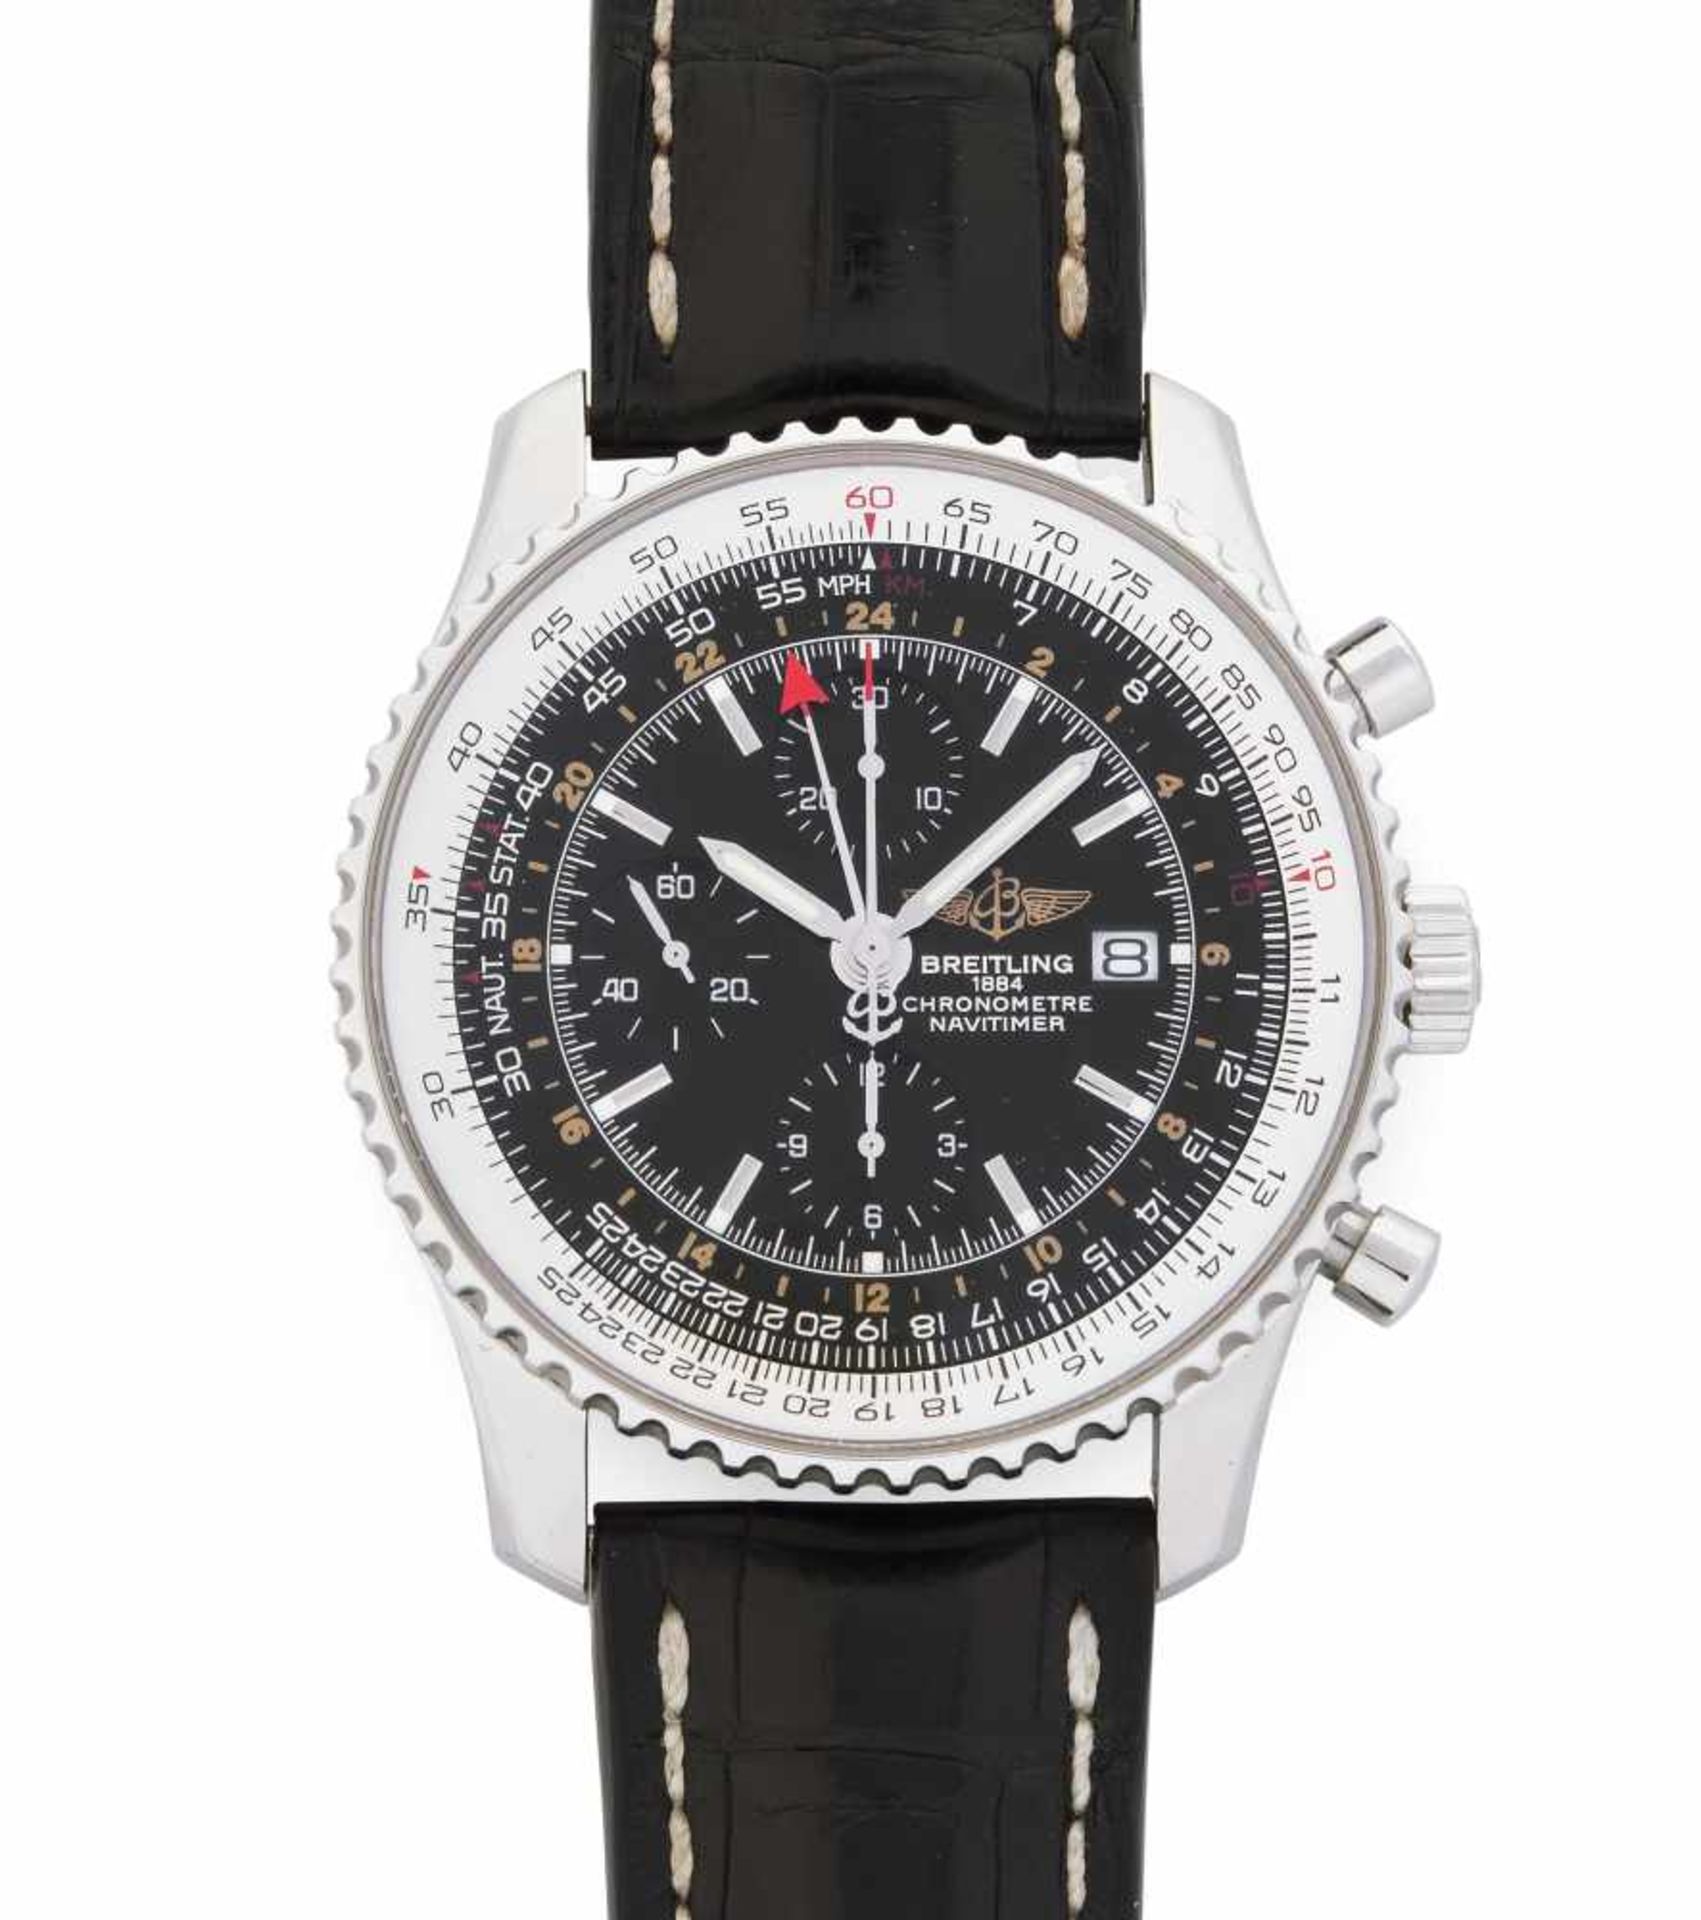 Breitling Navytimer GMTRunder, automatischer Chronometer um 2010 mit Chronographenfunktion in